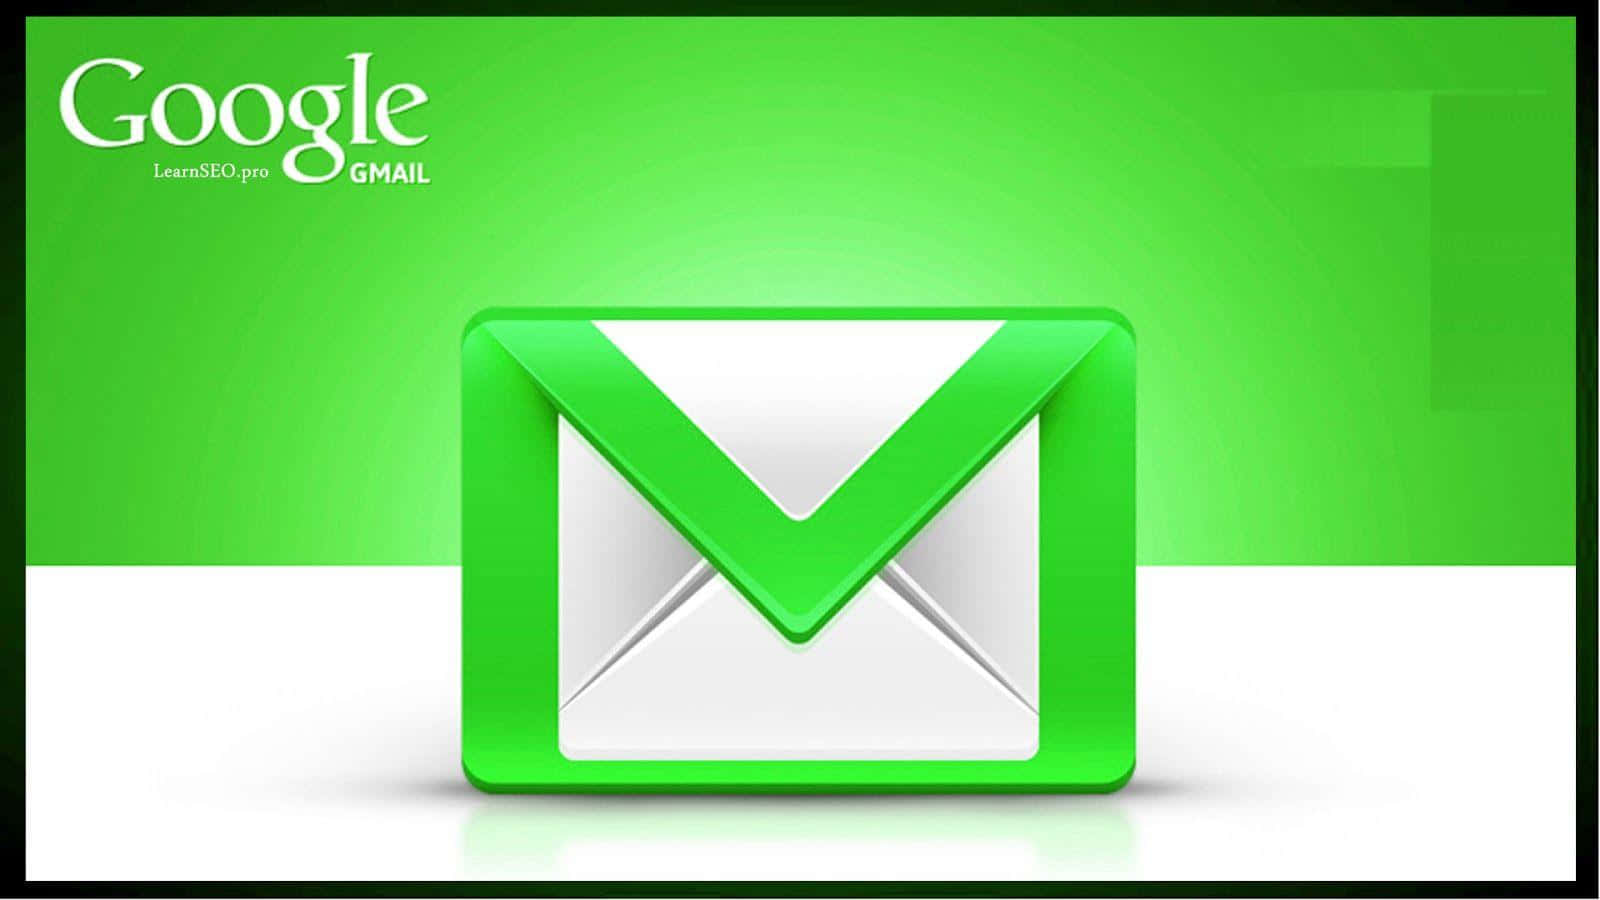 Steigernsie Ihre Sicherheit Mit Gmail.